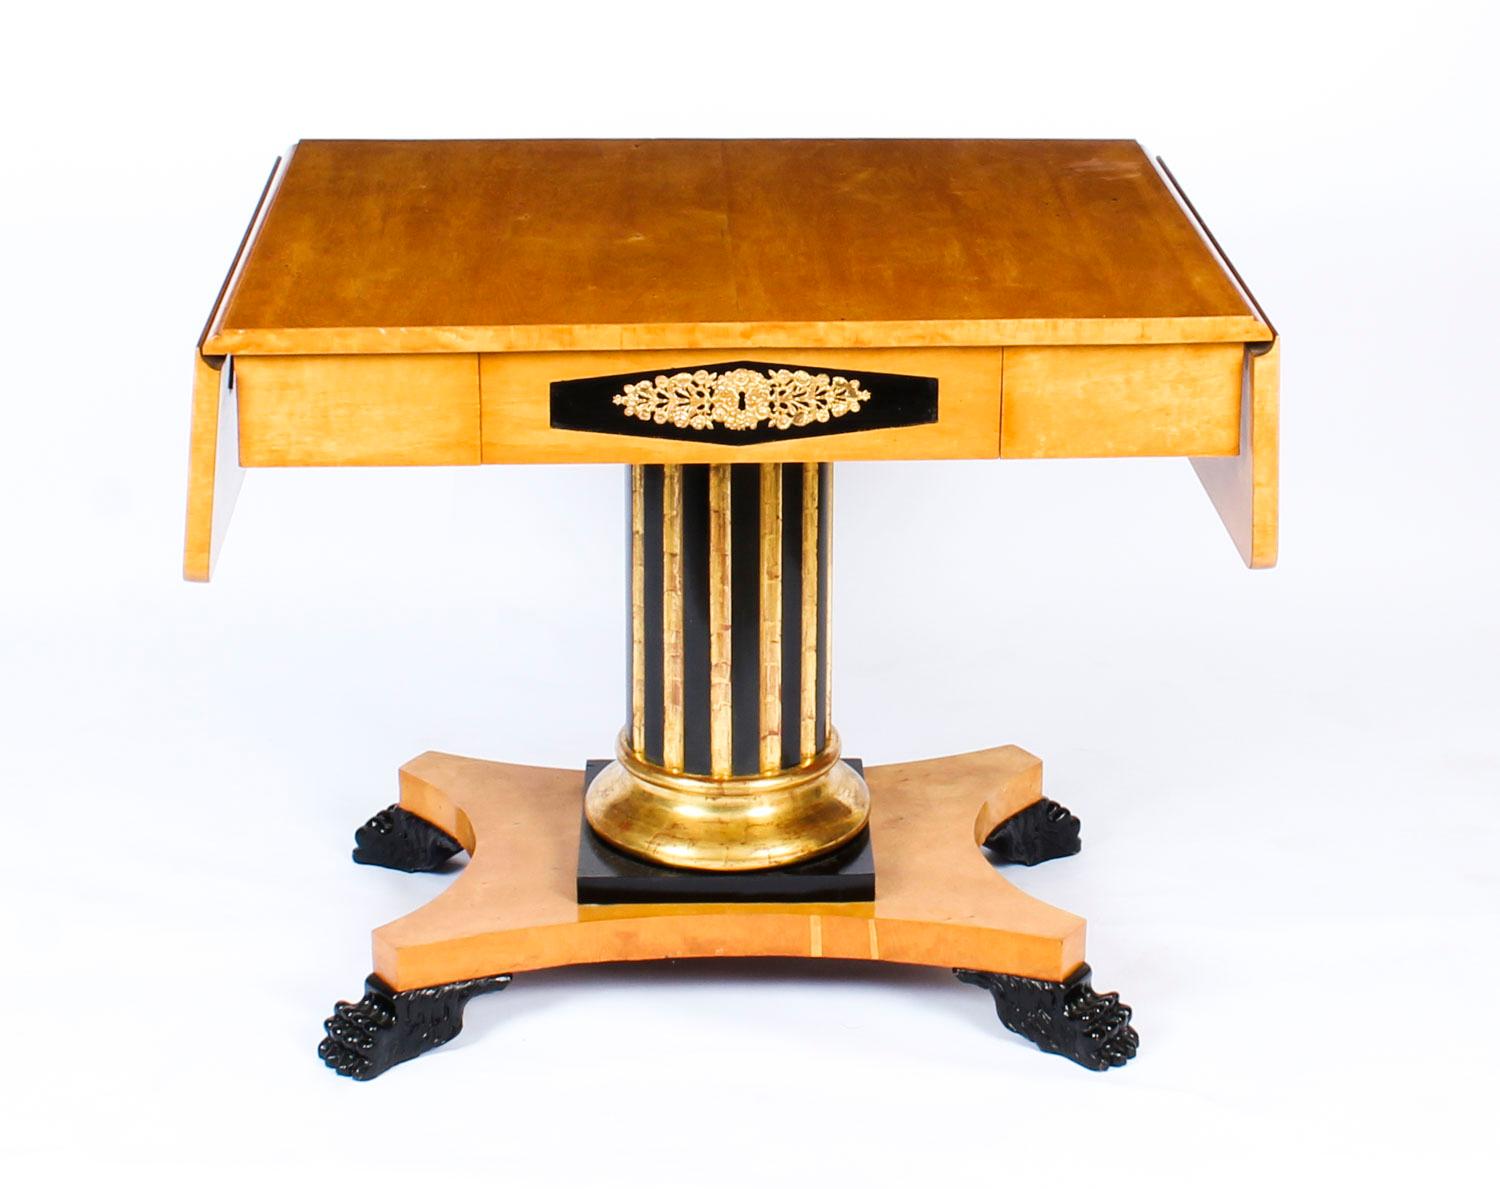 Il s'agit d'une élégante table de canapé Biedermeier suédoise en bouleau avec des détails ébénisés, datant d'environ 1820.
 
La table présente un plateau rectangulaire avec un abattant de chaque côté au-dessus d'un tiroir de frise utile. Il repose